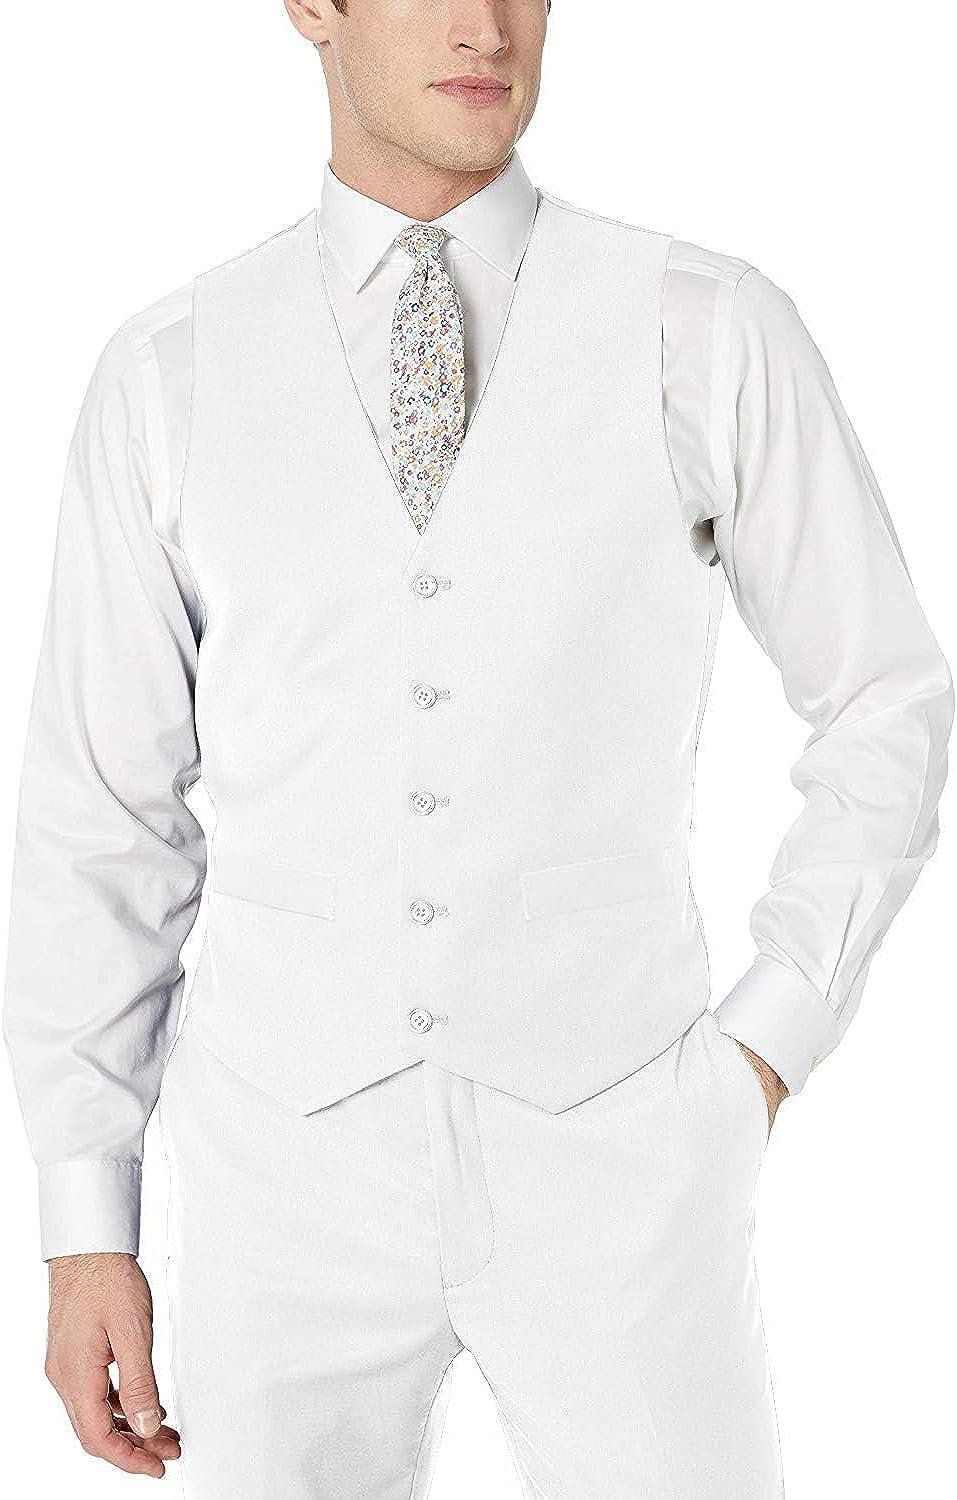 Adam Baker Men's Classic Fit Formal Business Suit Vest - Many Sizes & Colors Available